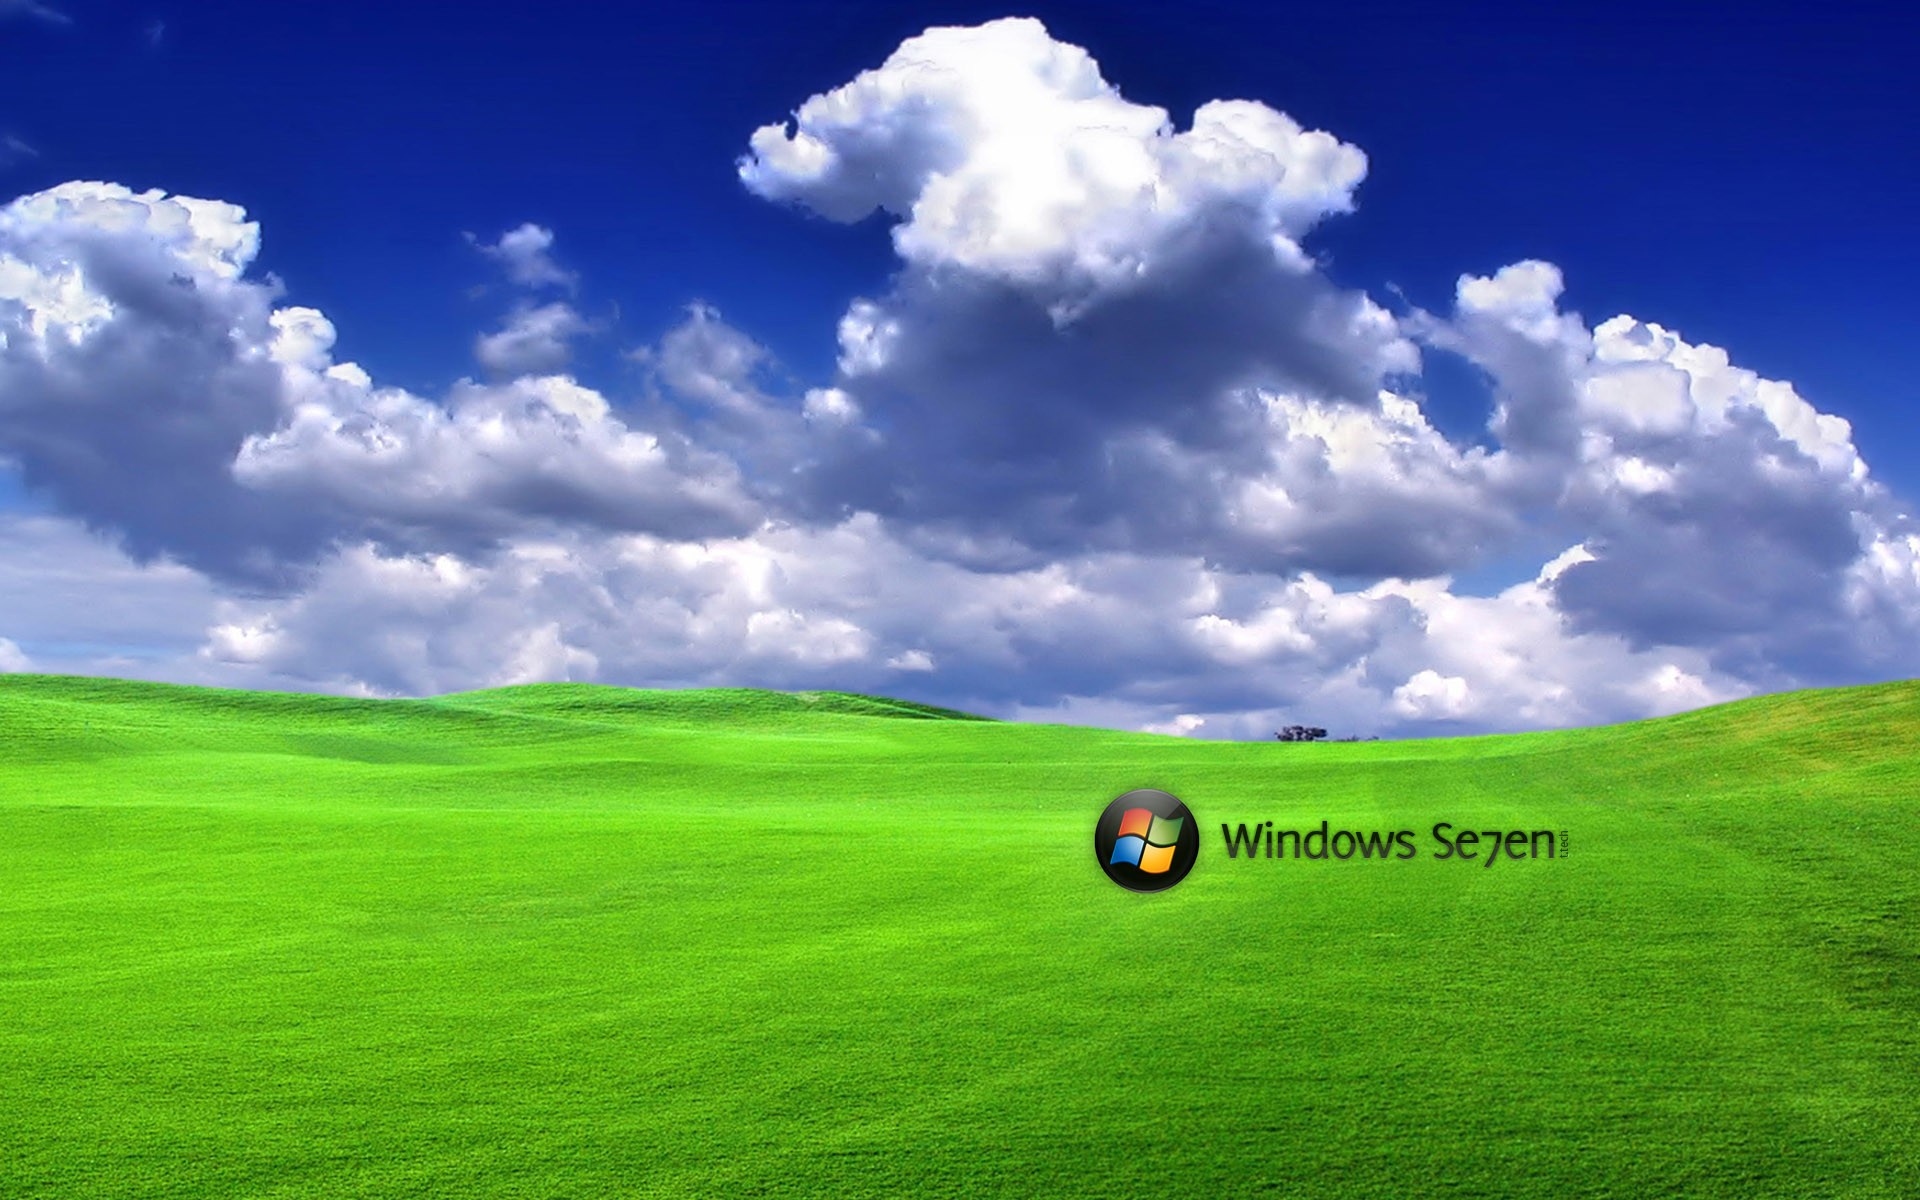 green, clouds, Windows 7 - desktop wallpaper